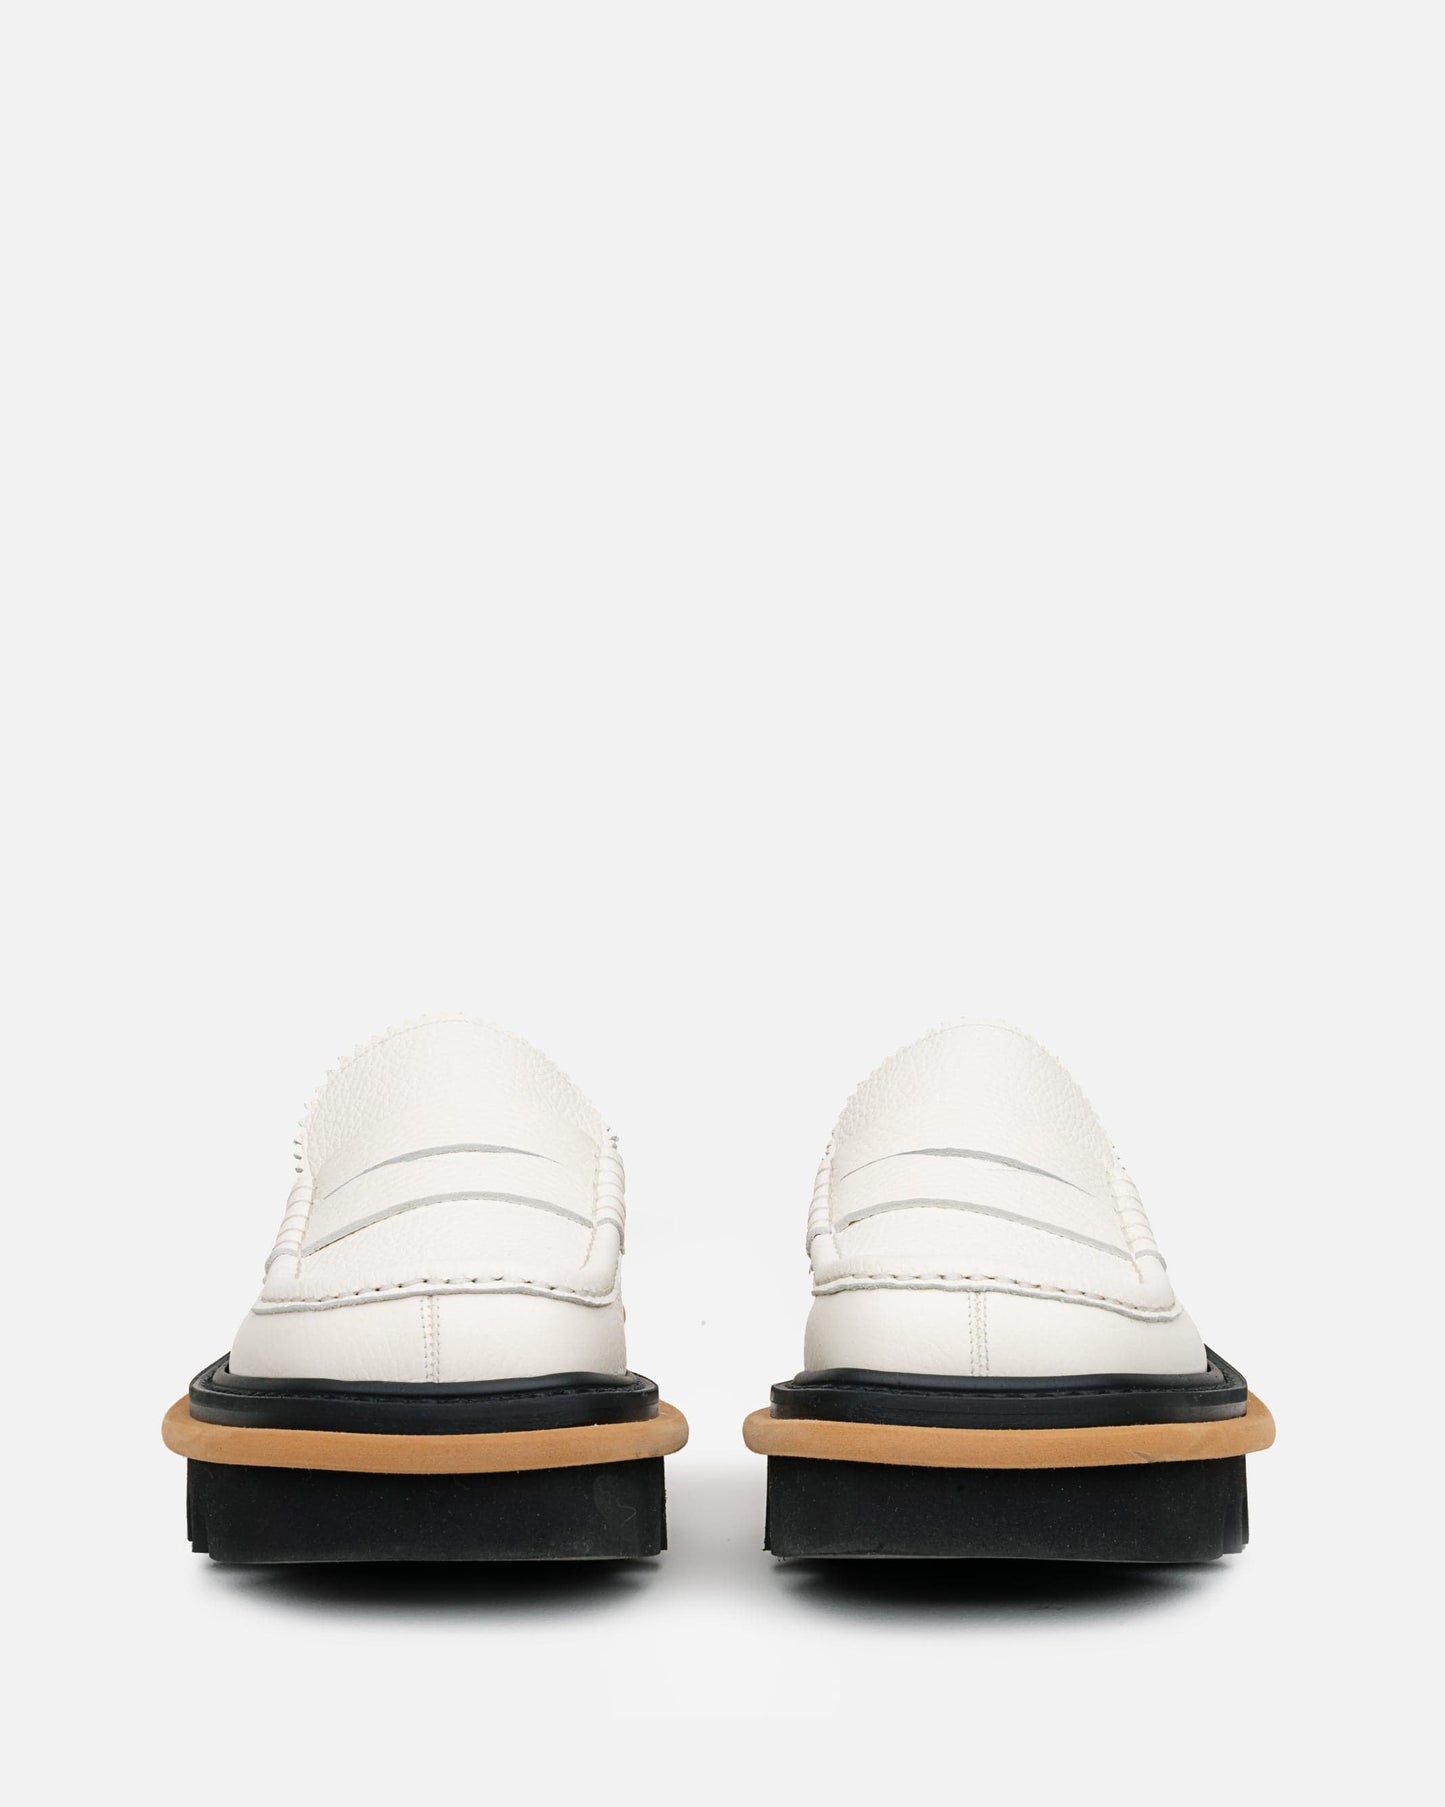 Dries Van Noten Men's Shoes Platform Loafer in Ivory